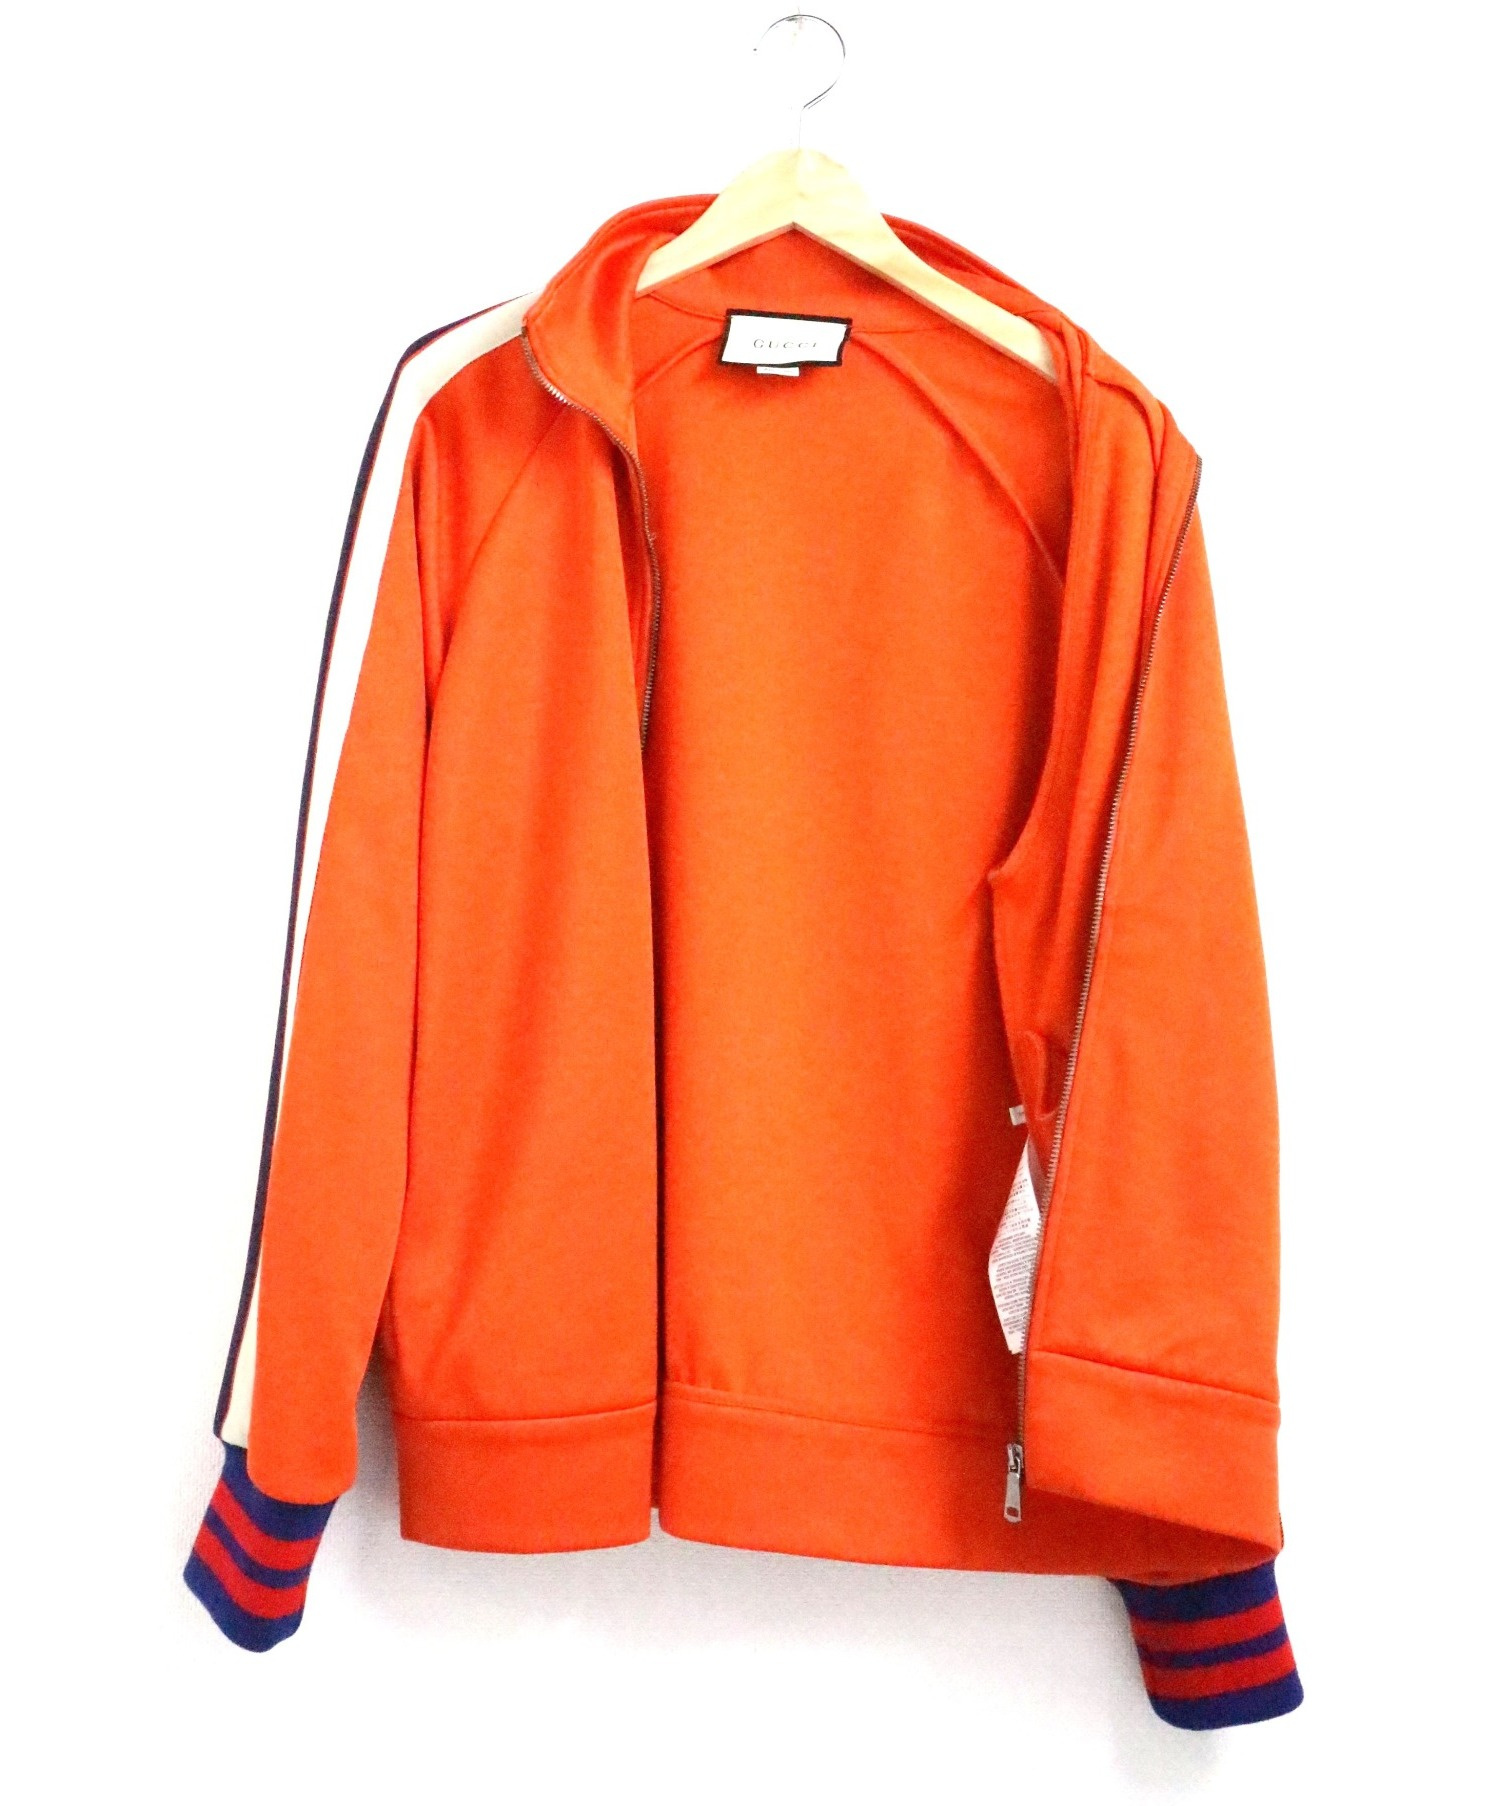 GUCCI (グッチ) テクニカルジャージージャケット オレンジ サイズ:SIZE S ケリングジャパンタグ付属 474634